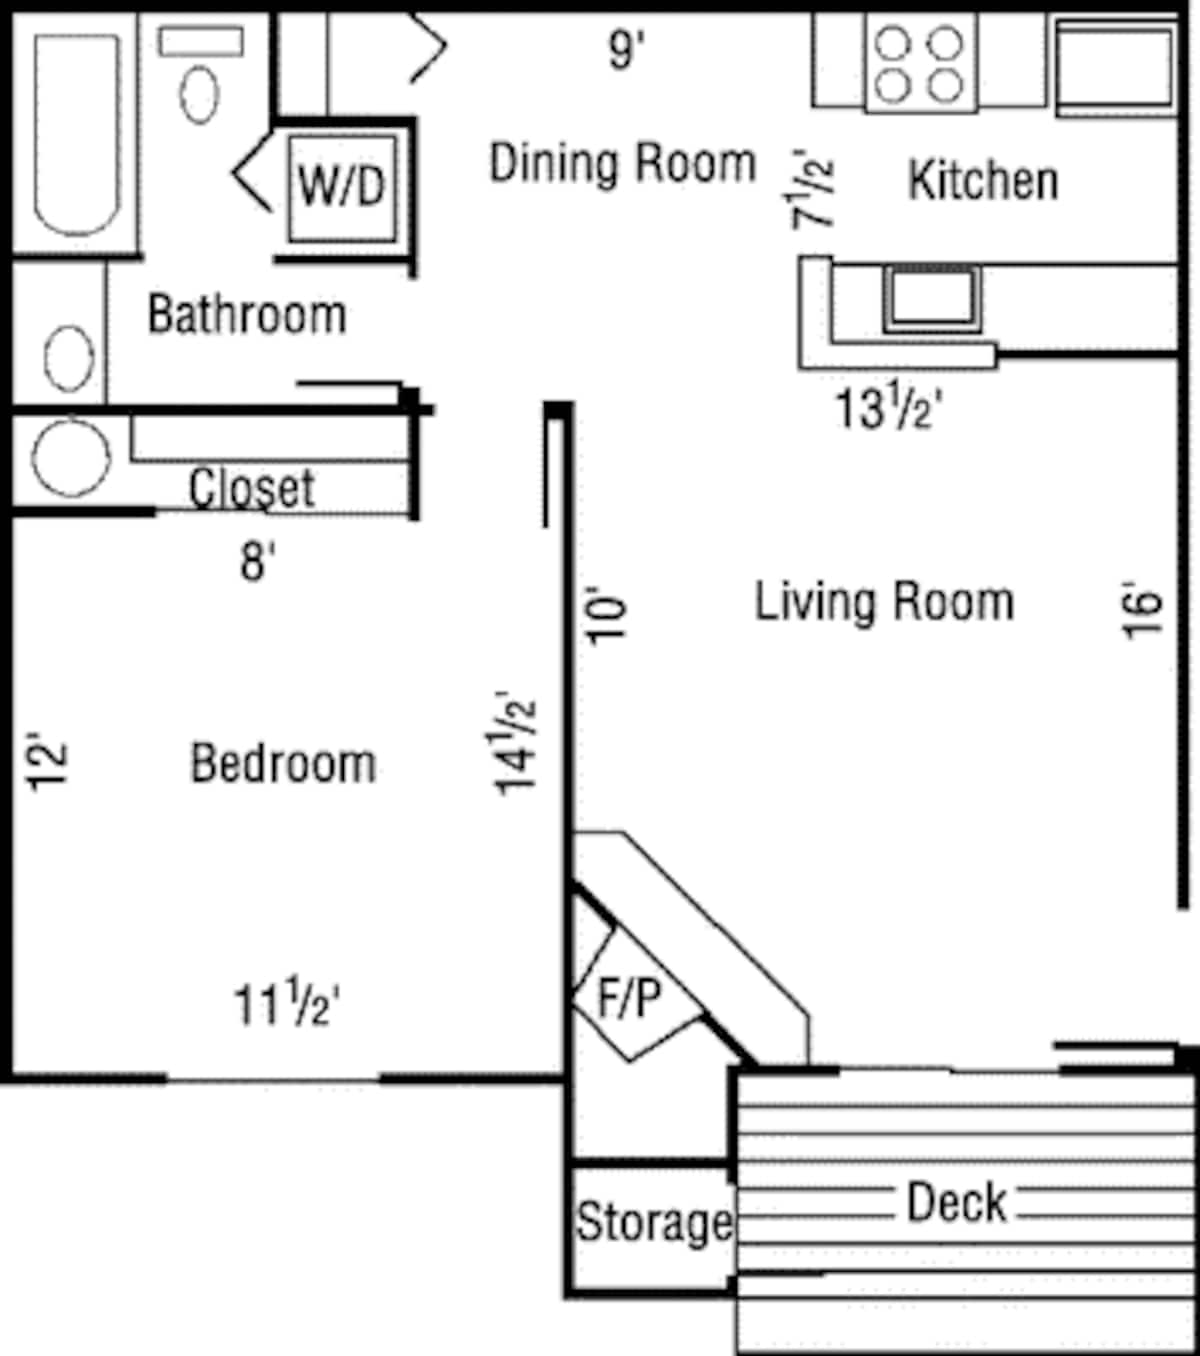 Floorplan diagram for 1 Bedrooms, showing 1 bedroom